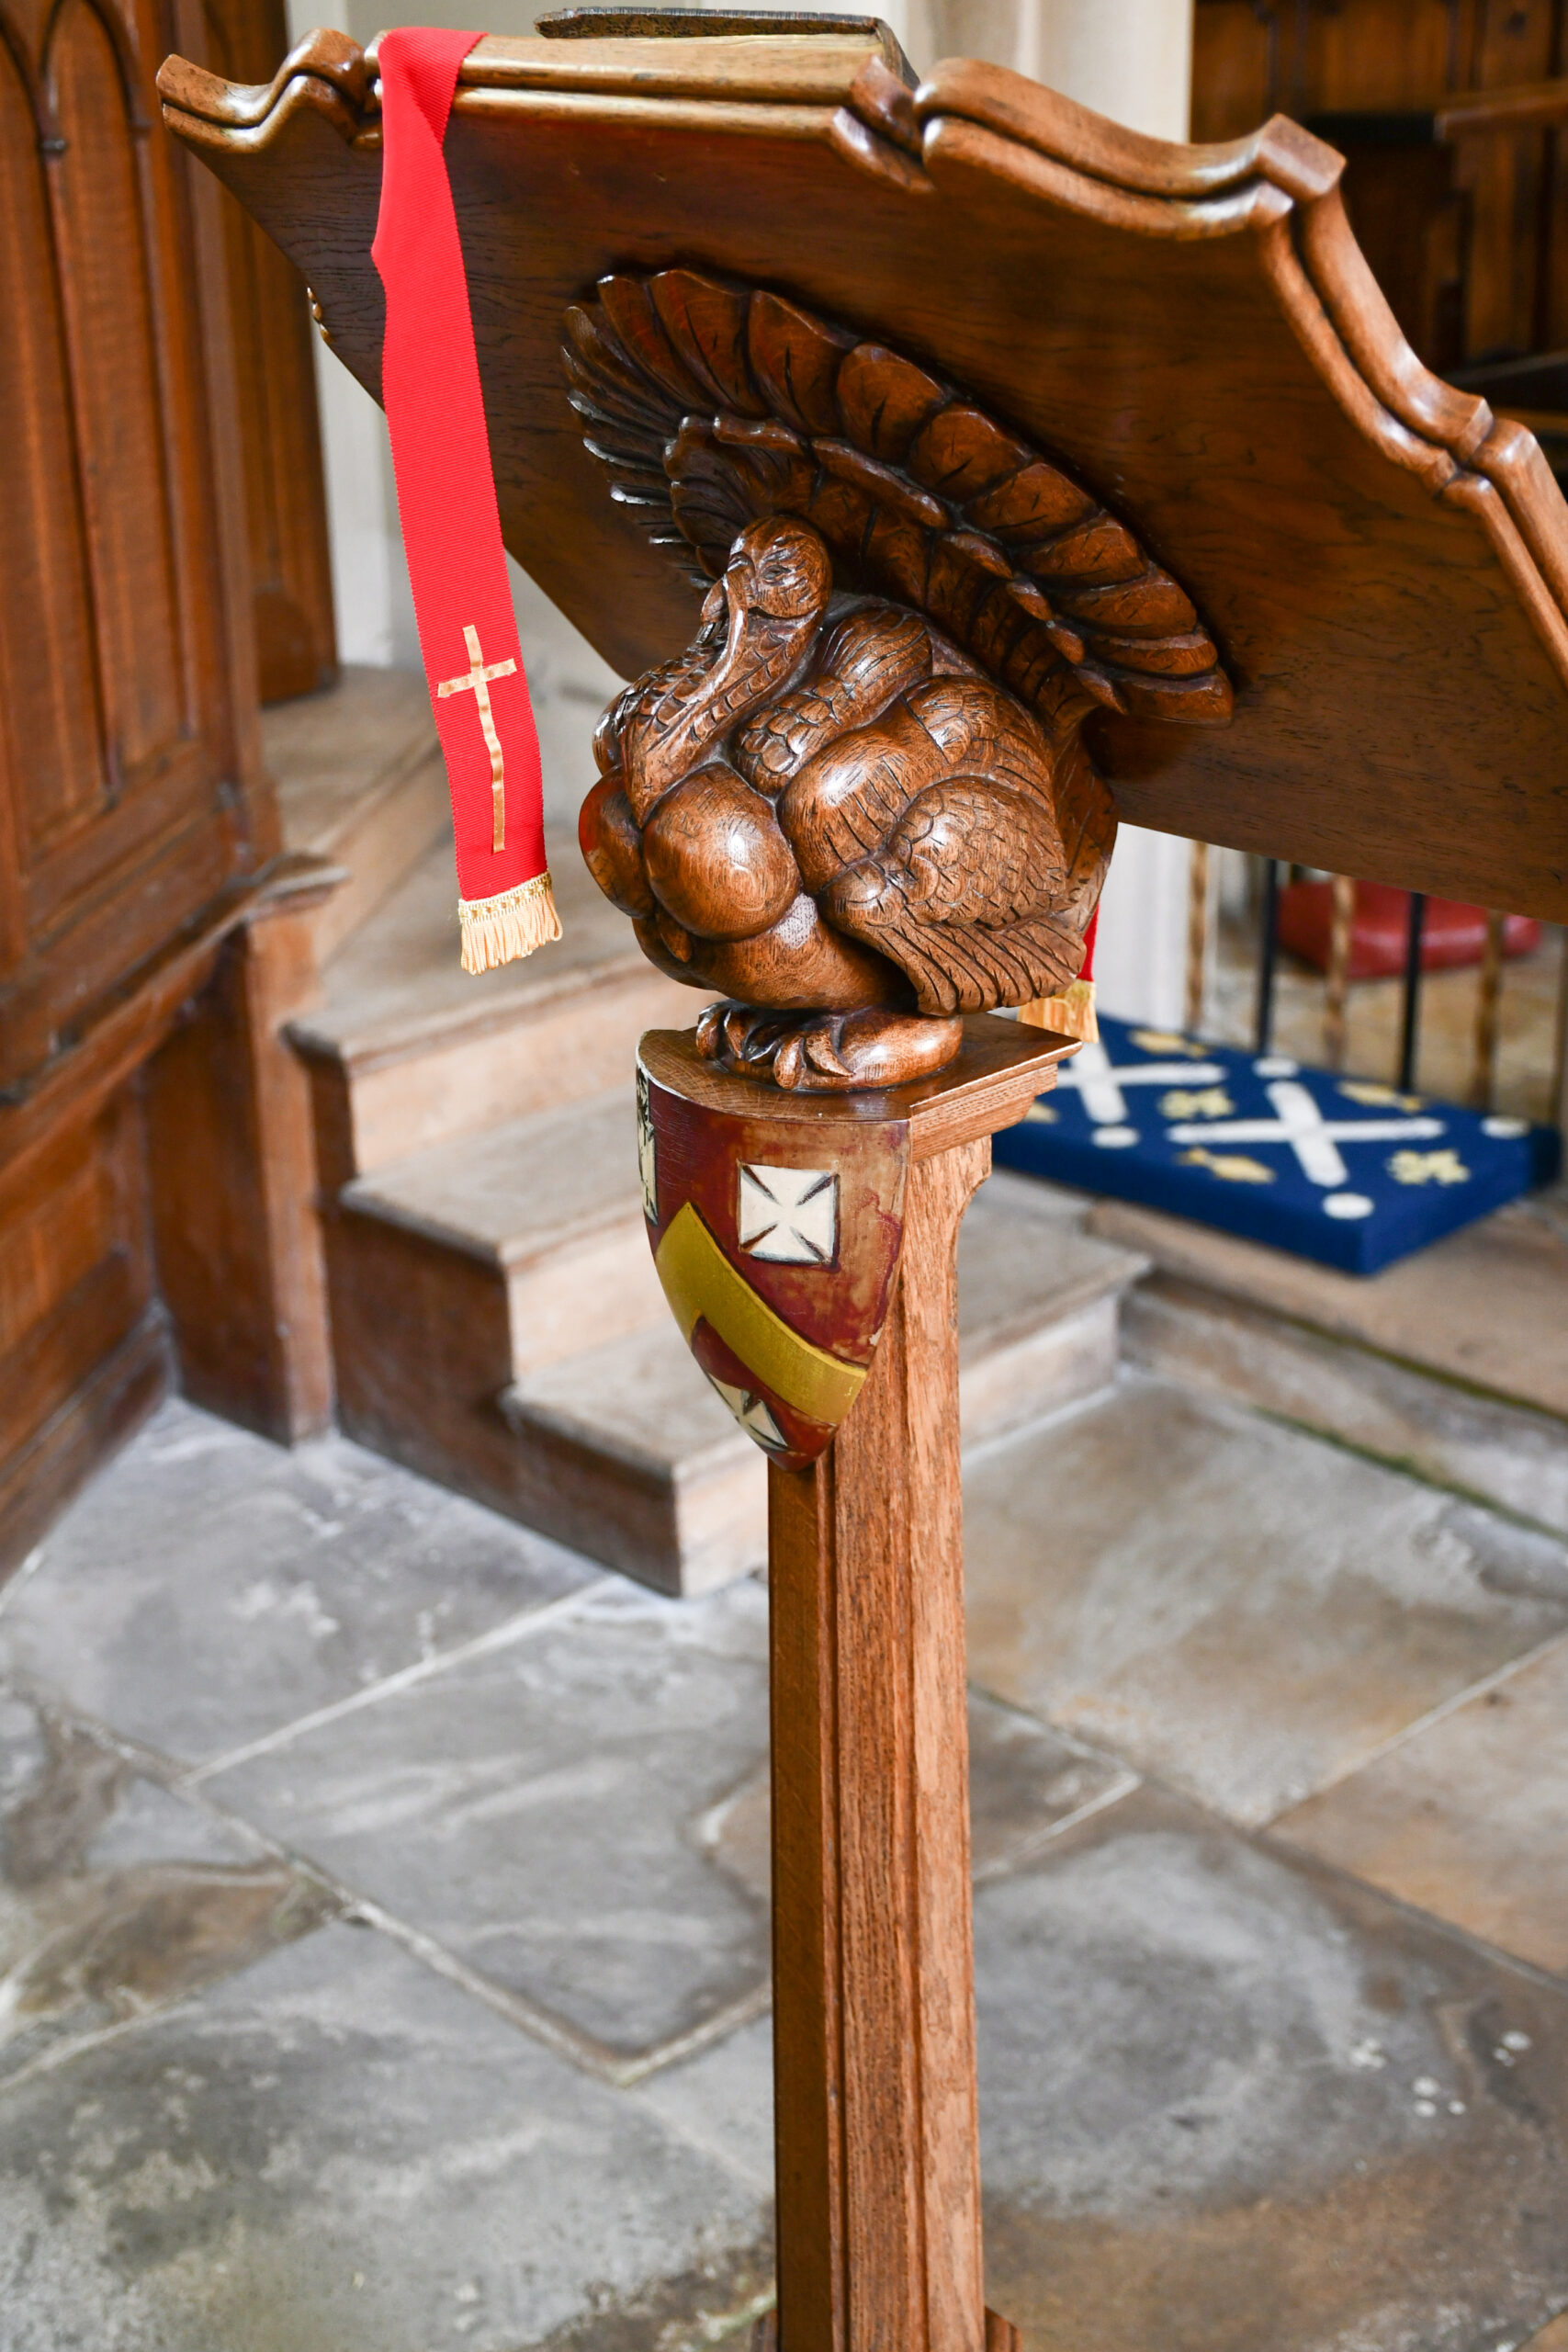 A turkey on a church lectern.